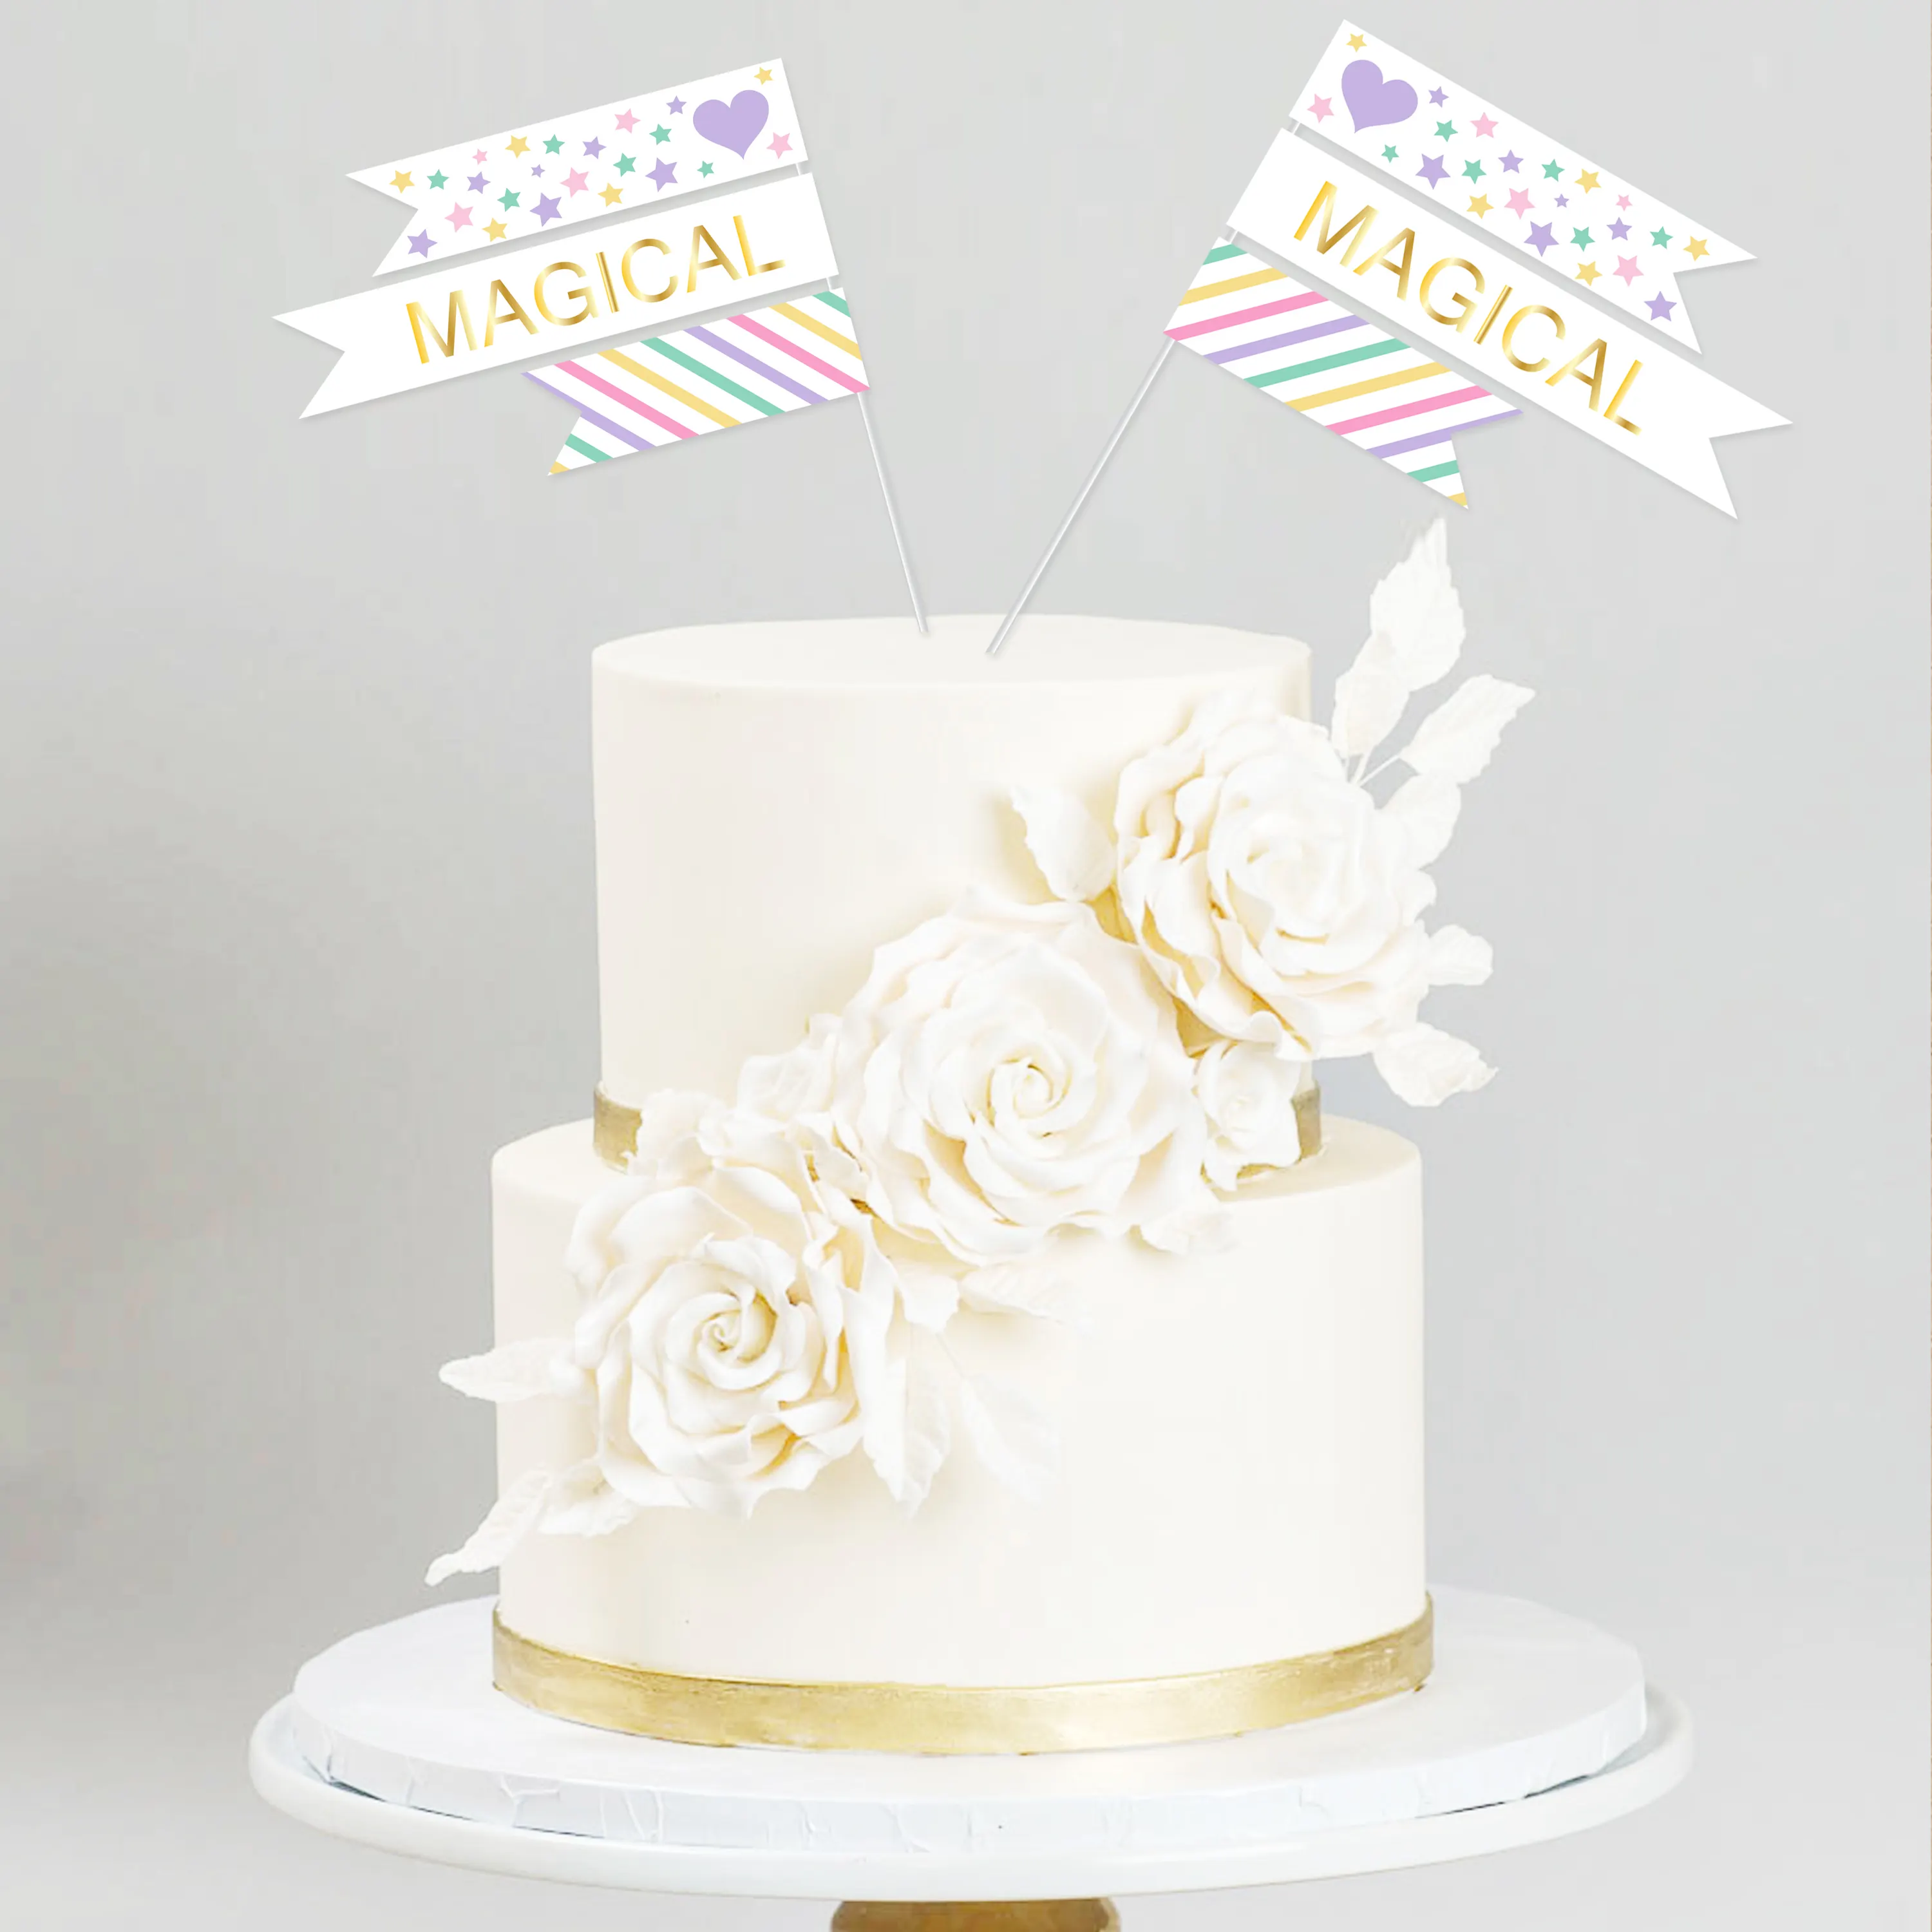 귀여운 유니콘 생일 웨딩 파티 케이크 장식 컵케익 토퍼 사진 소품 및 파티 용품